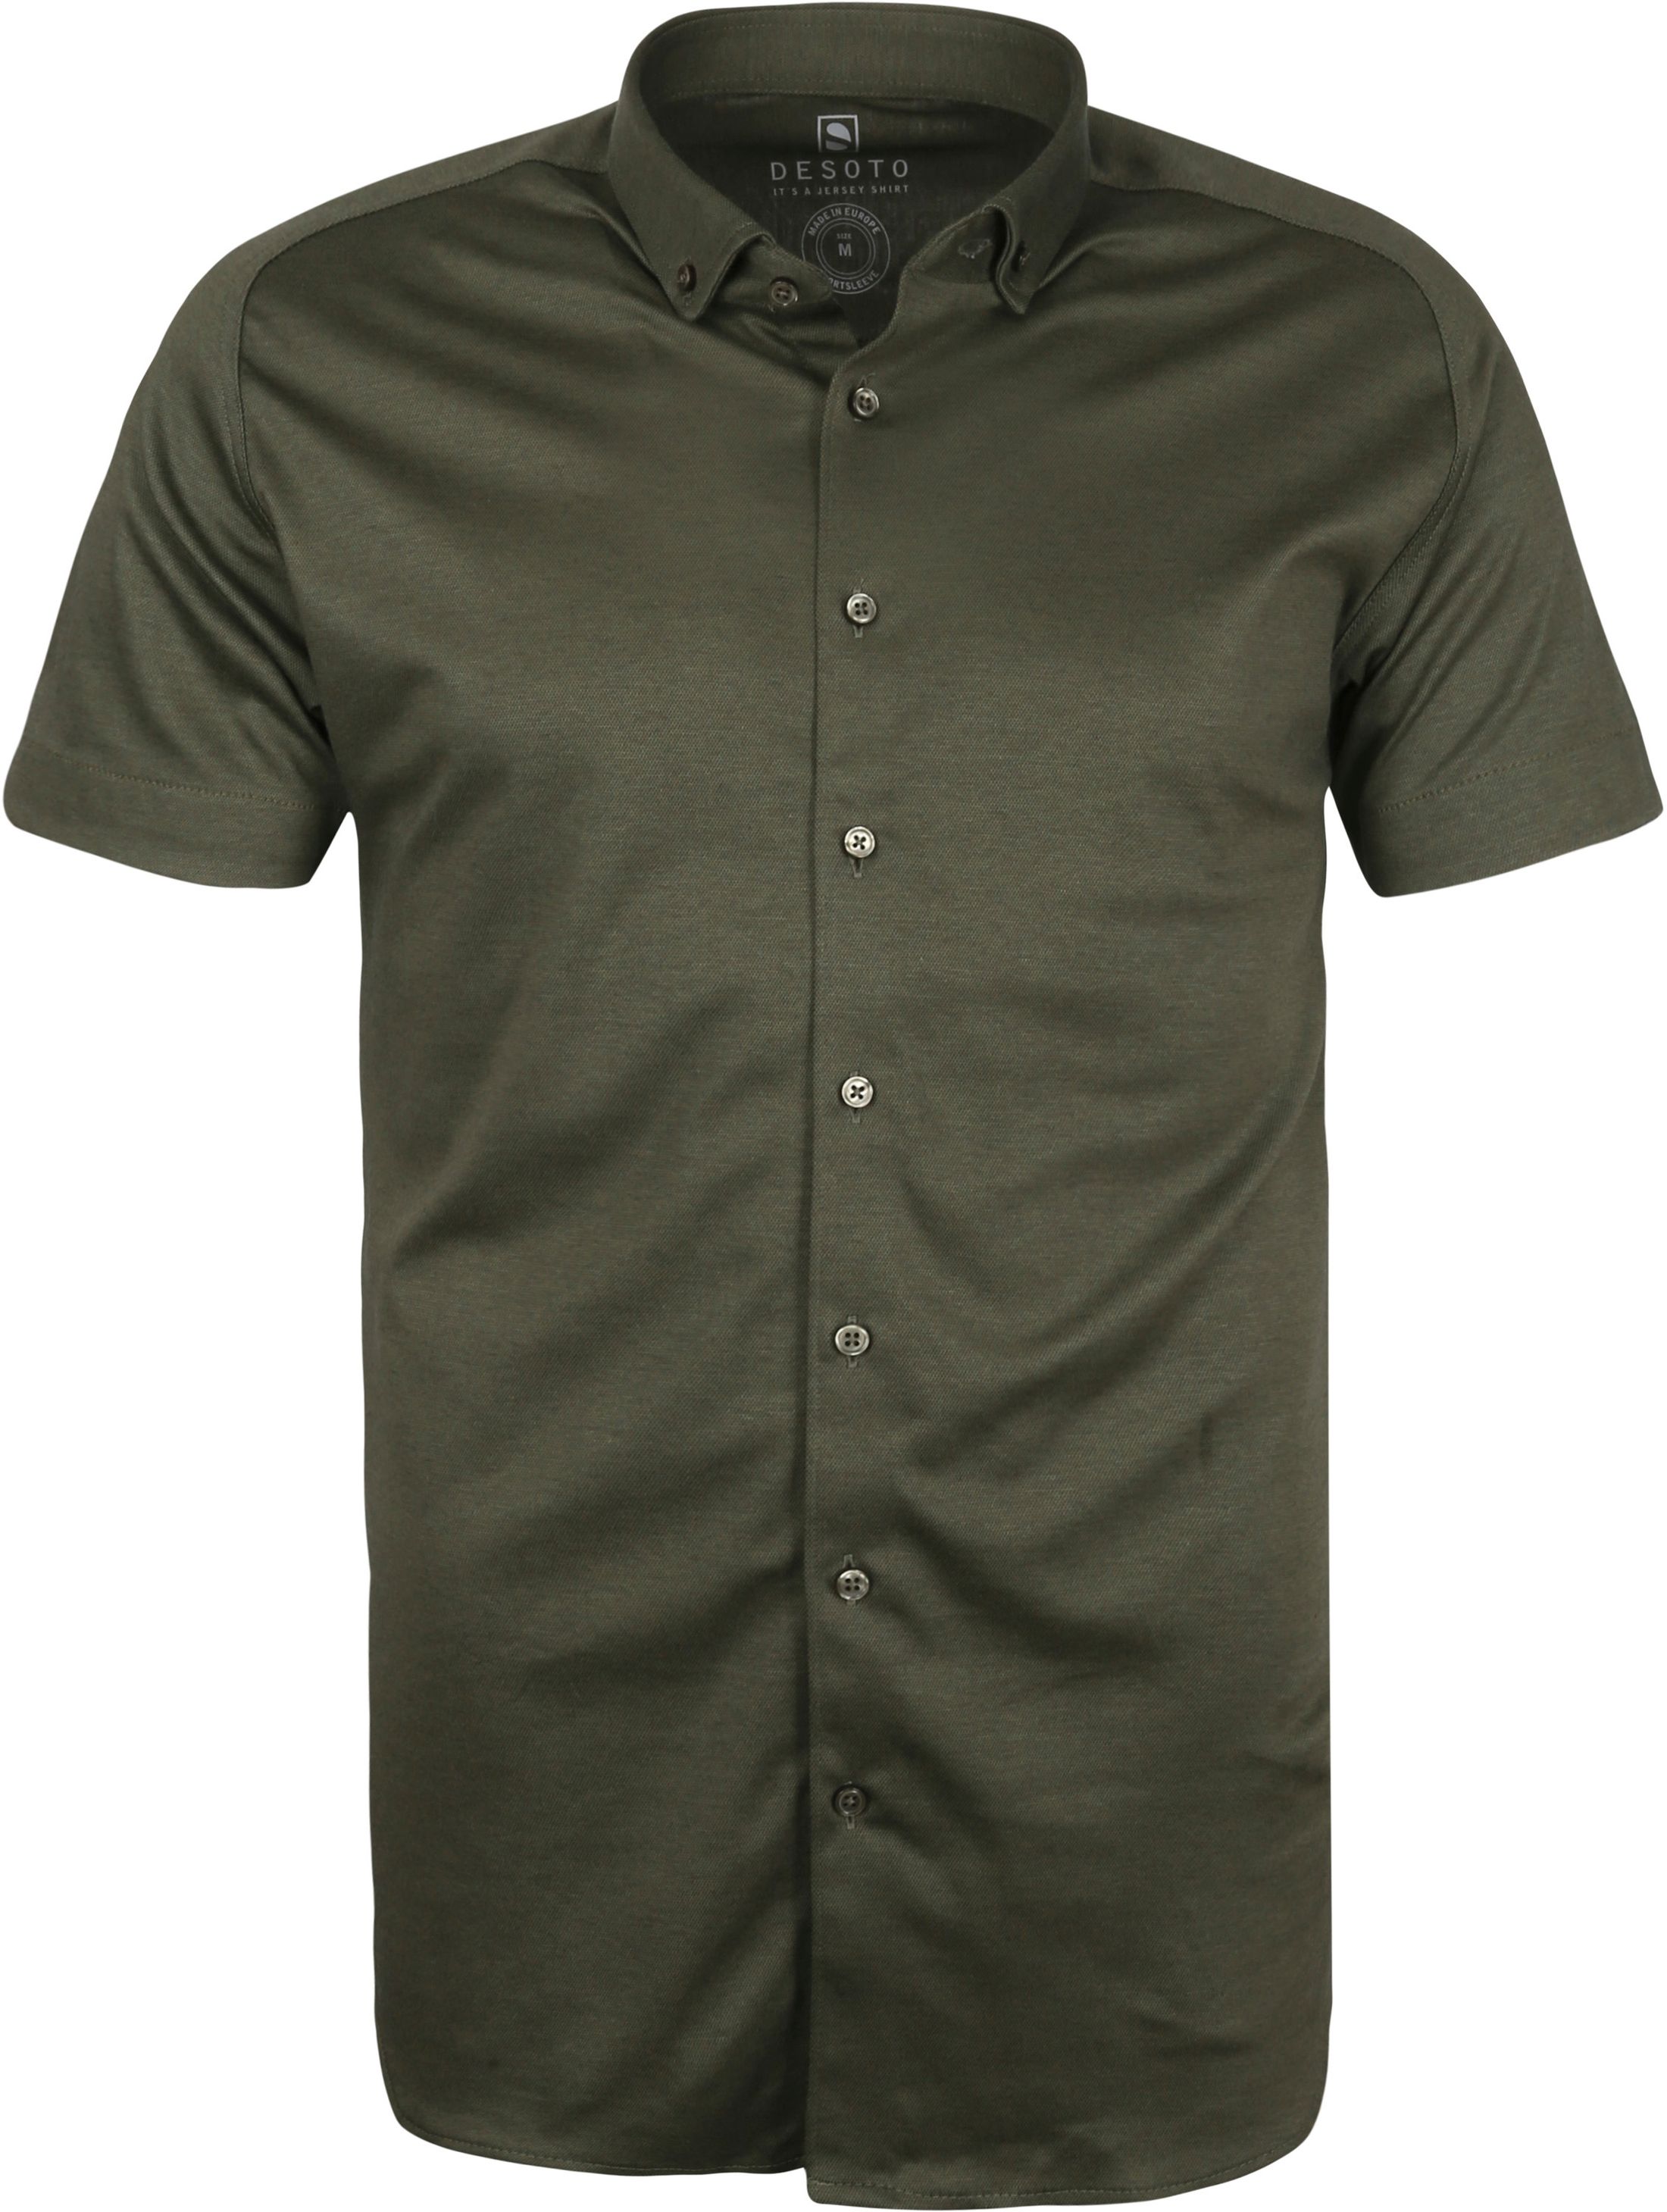 Desoto Modern SHS Shirt Dark Green Dark Green size 3XL